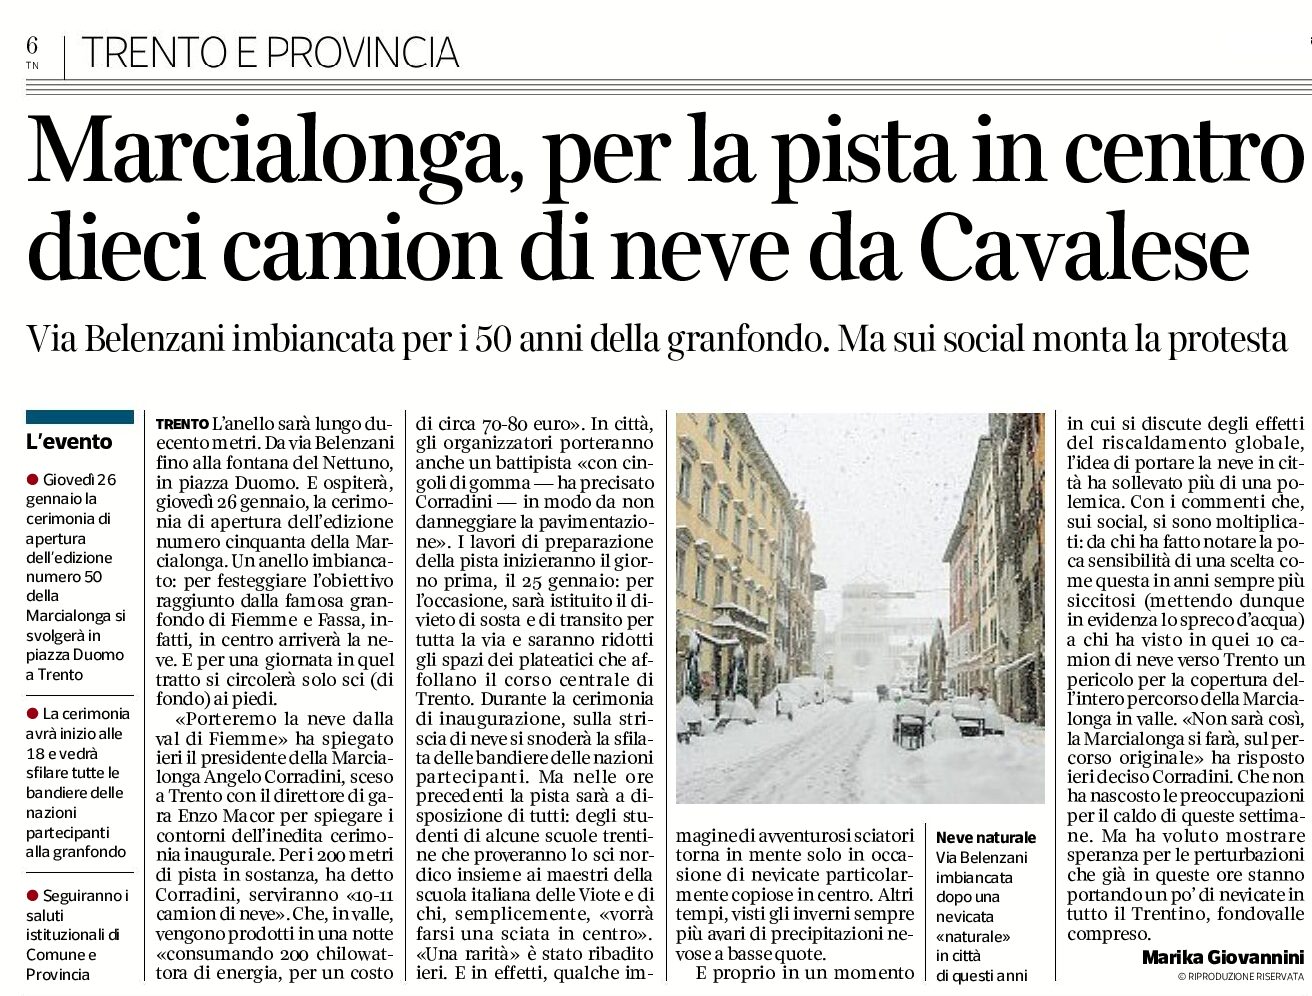 Trento, Marcialonga: per la pista in centro, dieci camion di neve da Cavalese